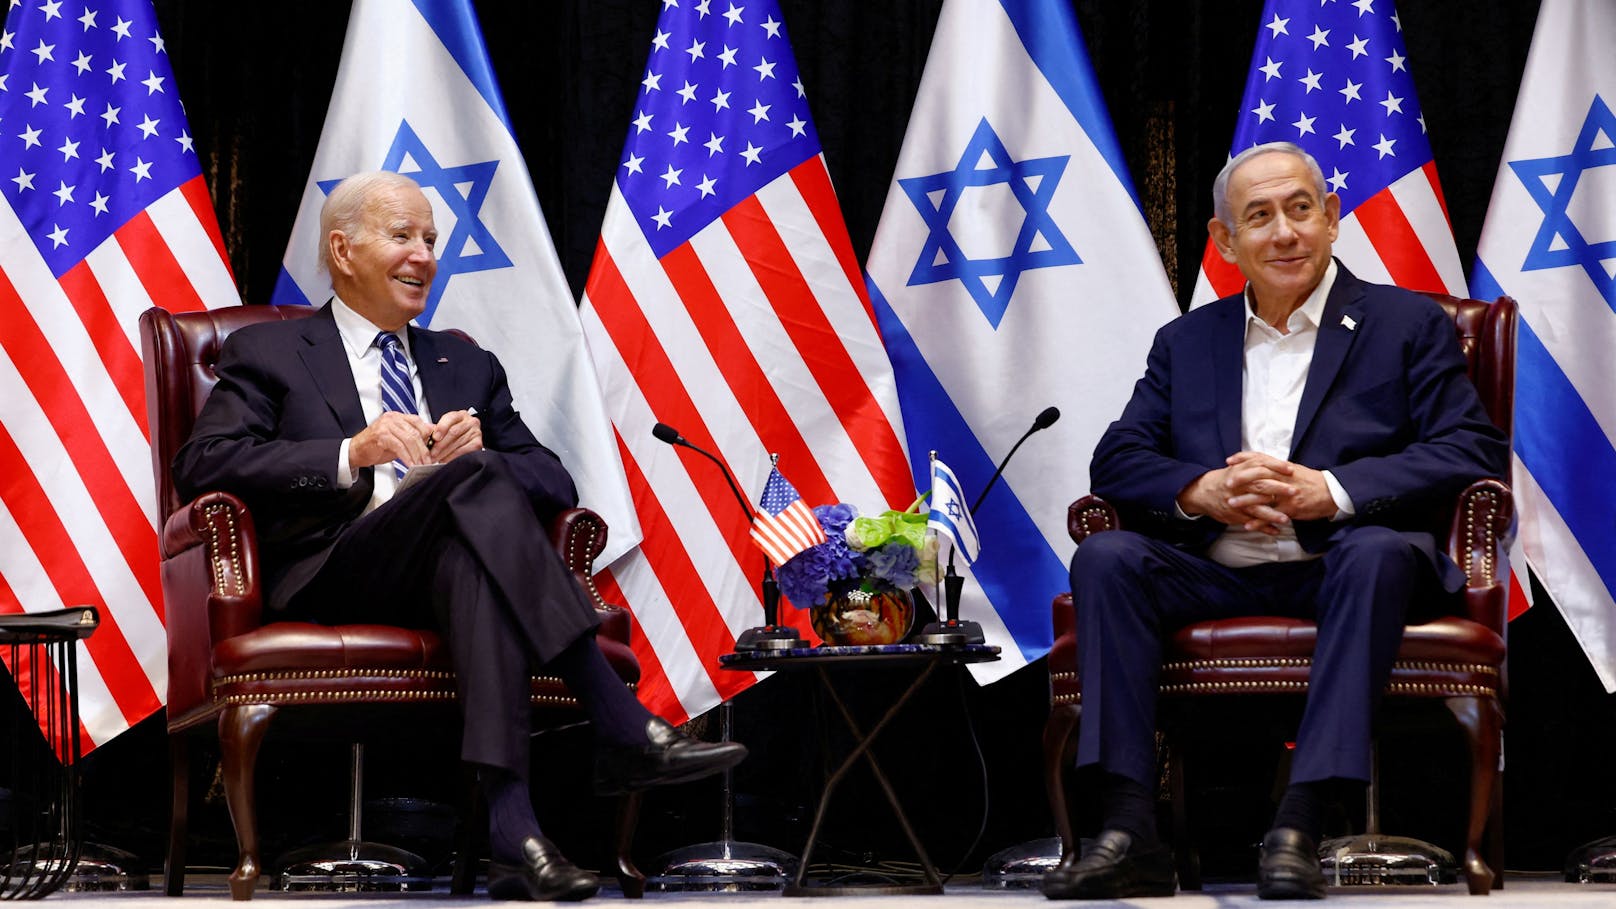 Für diesen Sonntag kündigte Biden ein Treffen der G7-Gruppe wirtschaftsstarker Demokratien an. Die USA würden sich jedoch nicht an "offensiven Operationen gegen den Iran beteiligen".